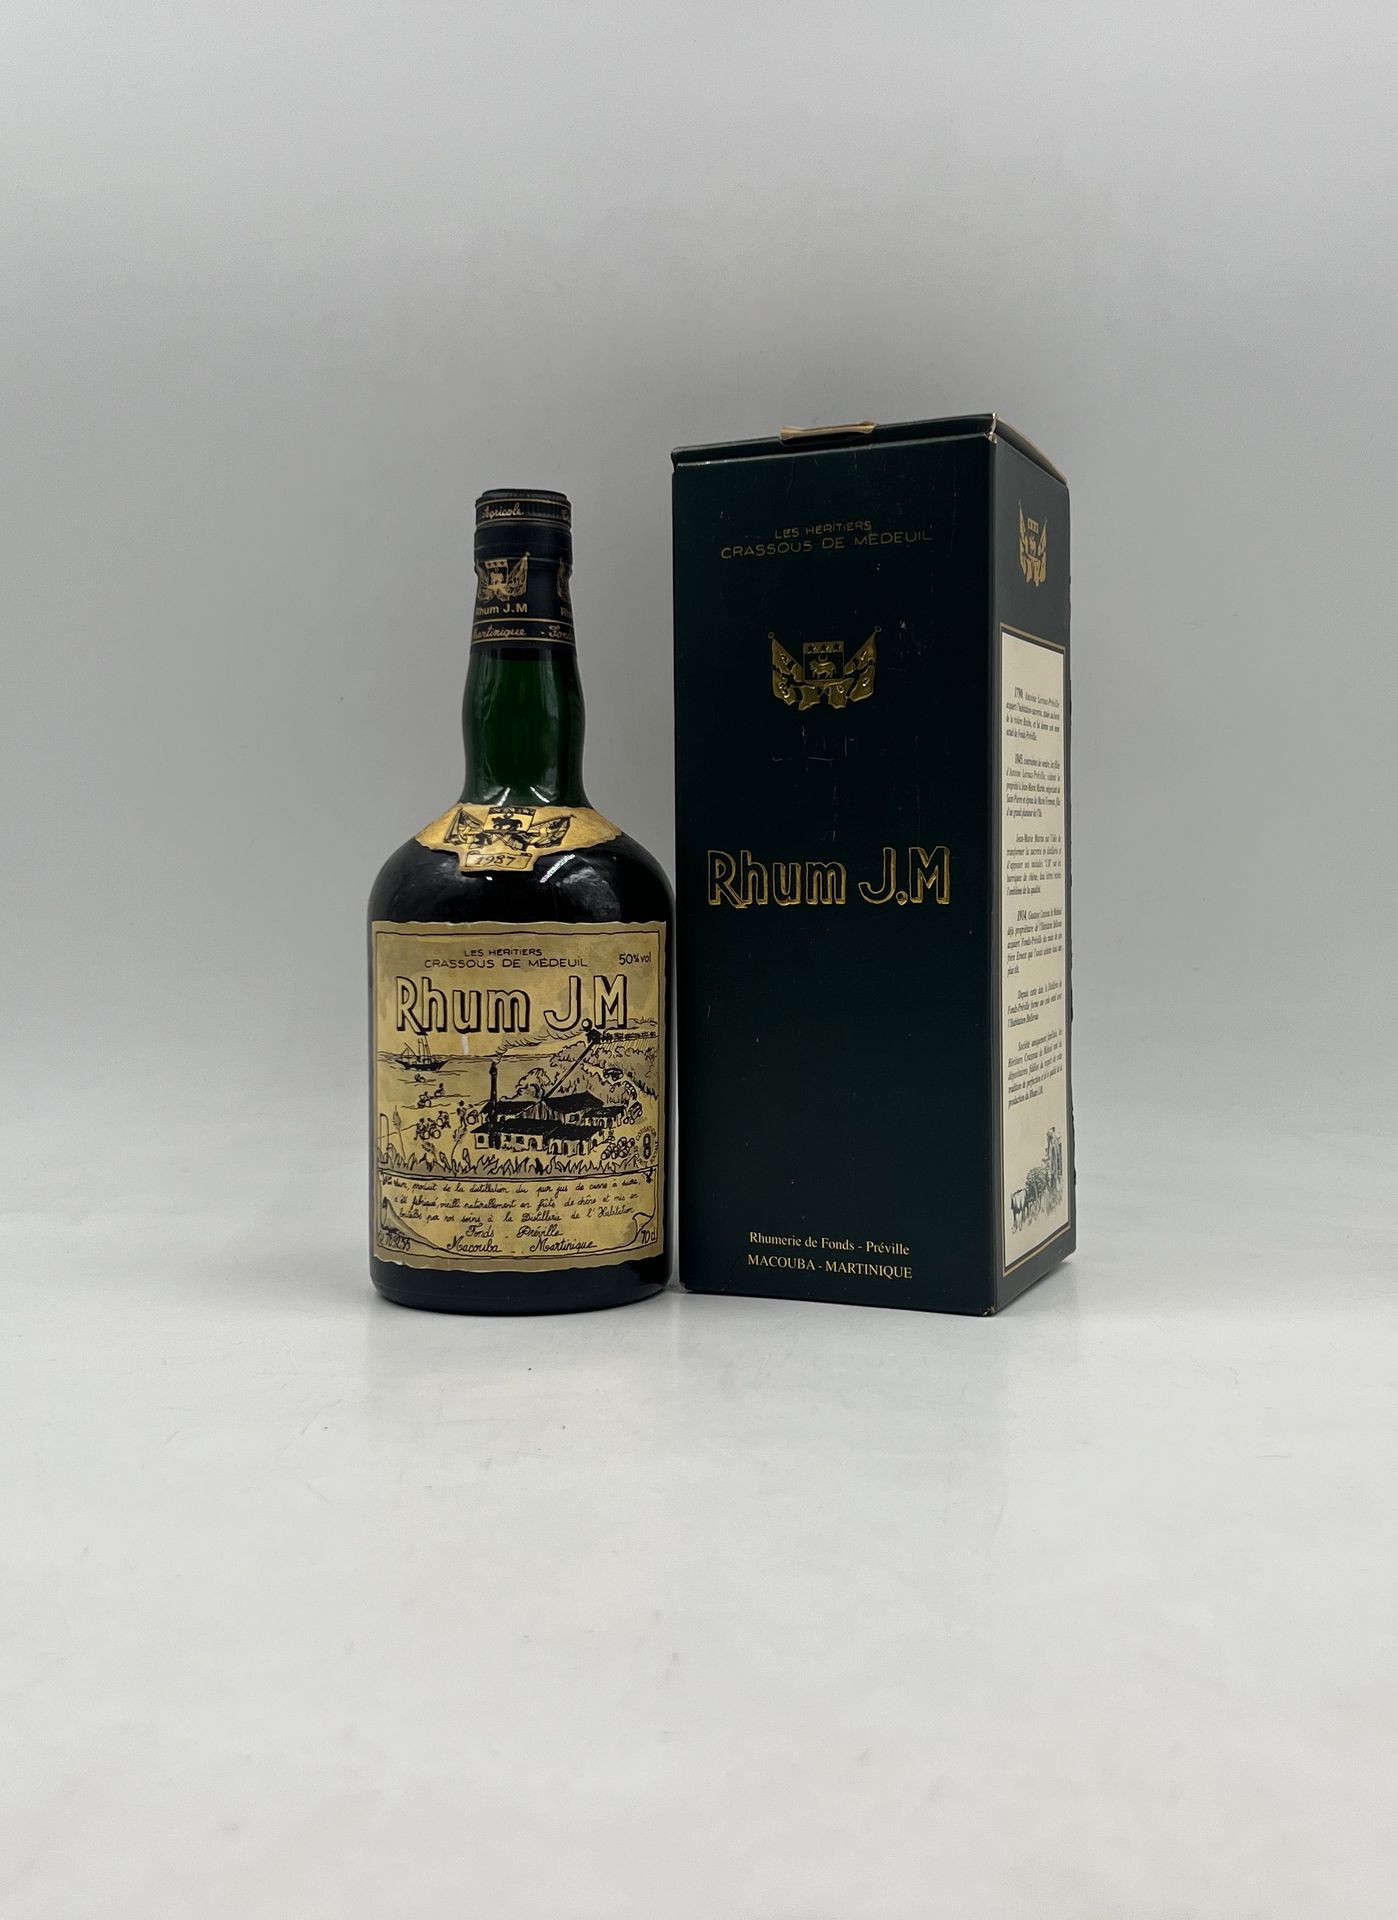 RHUM, J.M 1987 1 bouteille RHUM, J.M 1987 (coffret)